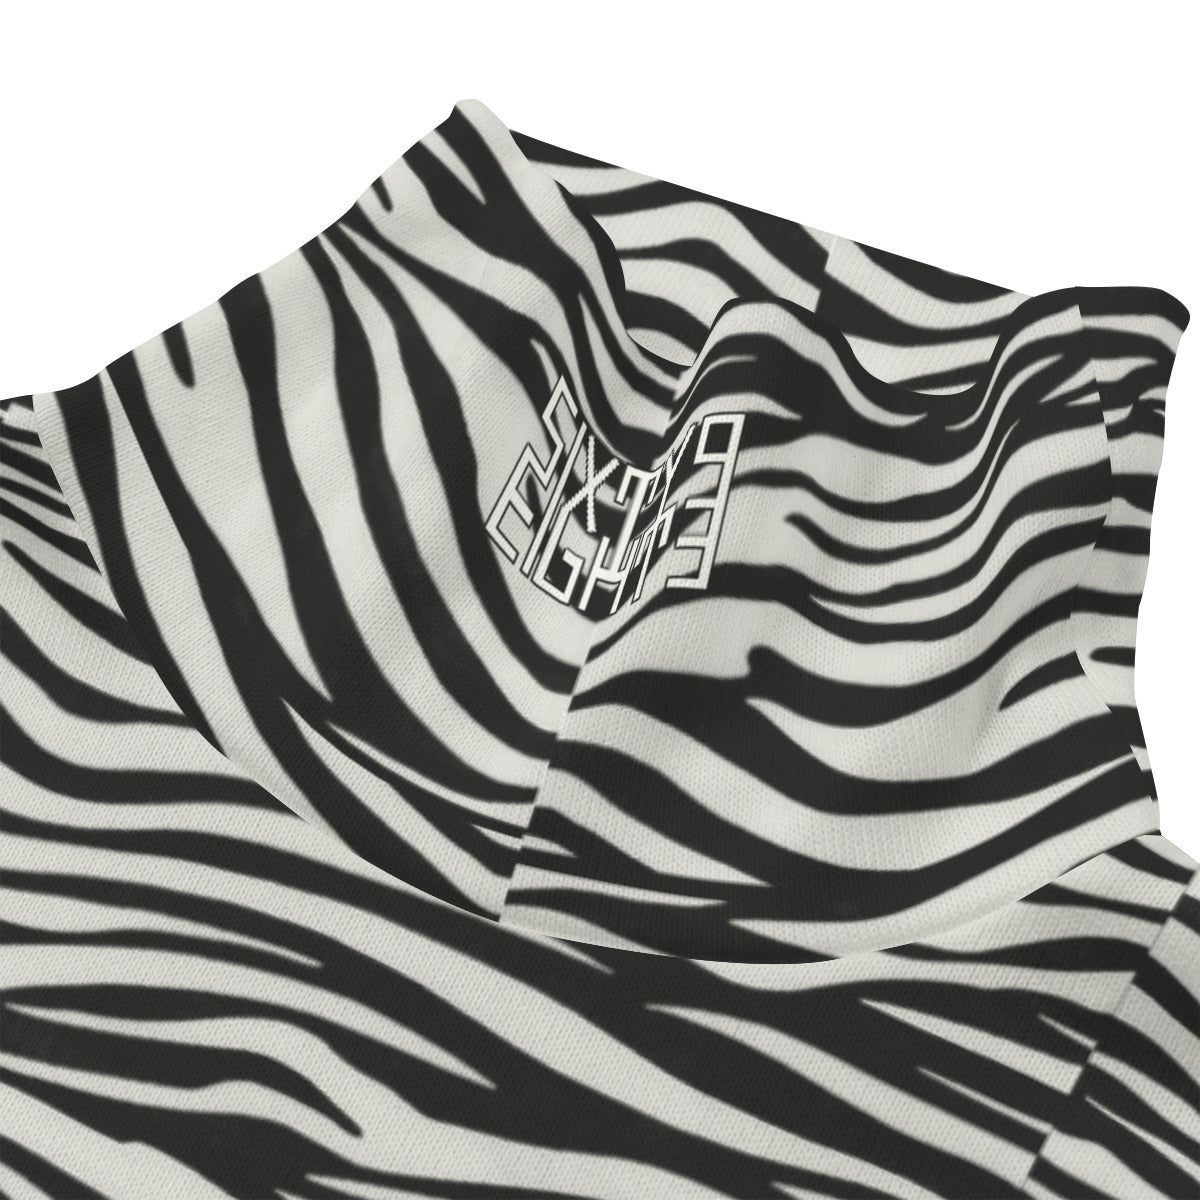 Sixty Eight 93 Logo White & Black OG Zebra Unisex Turtleneck Knitted Fleece Sweater